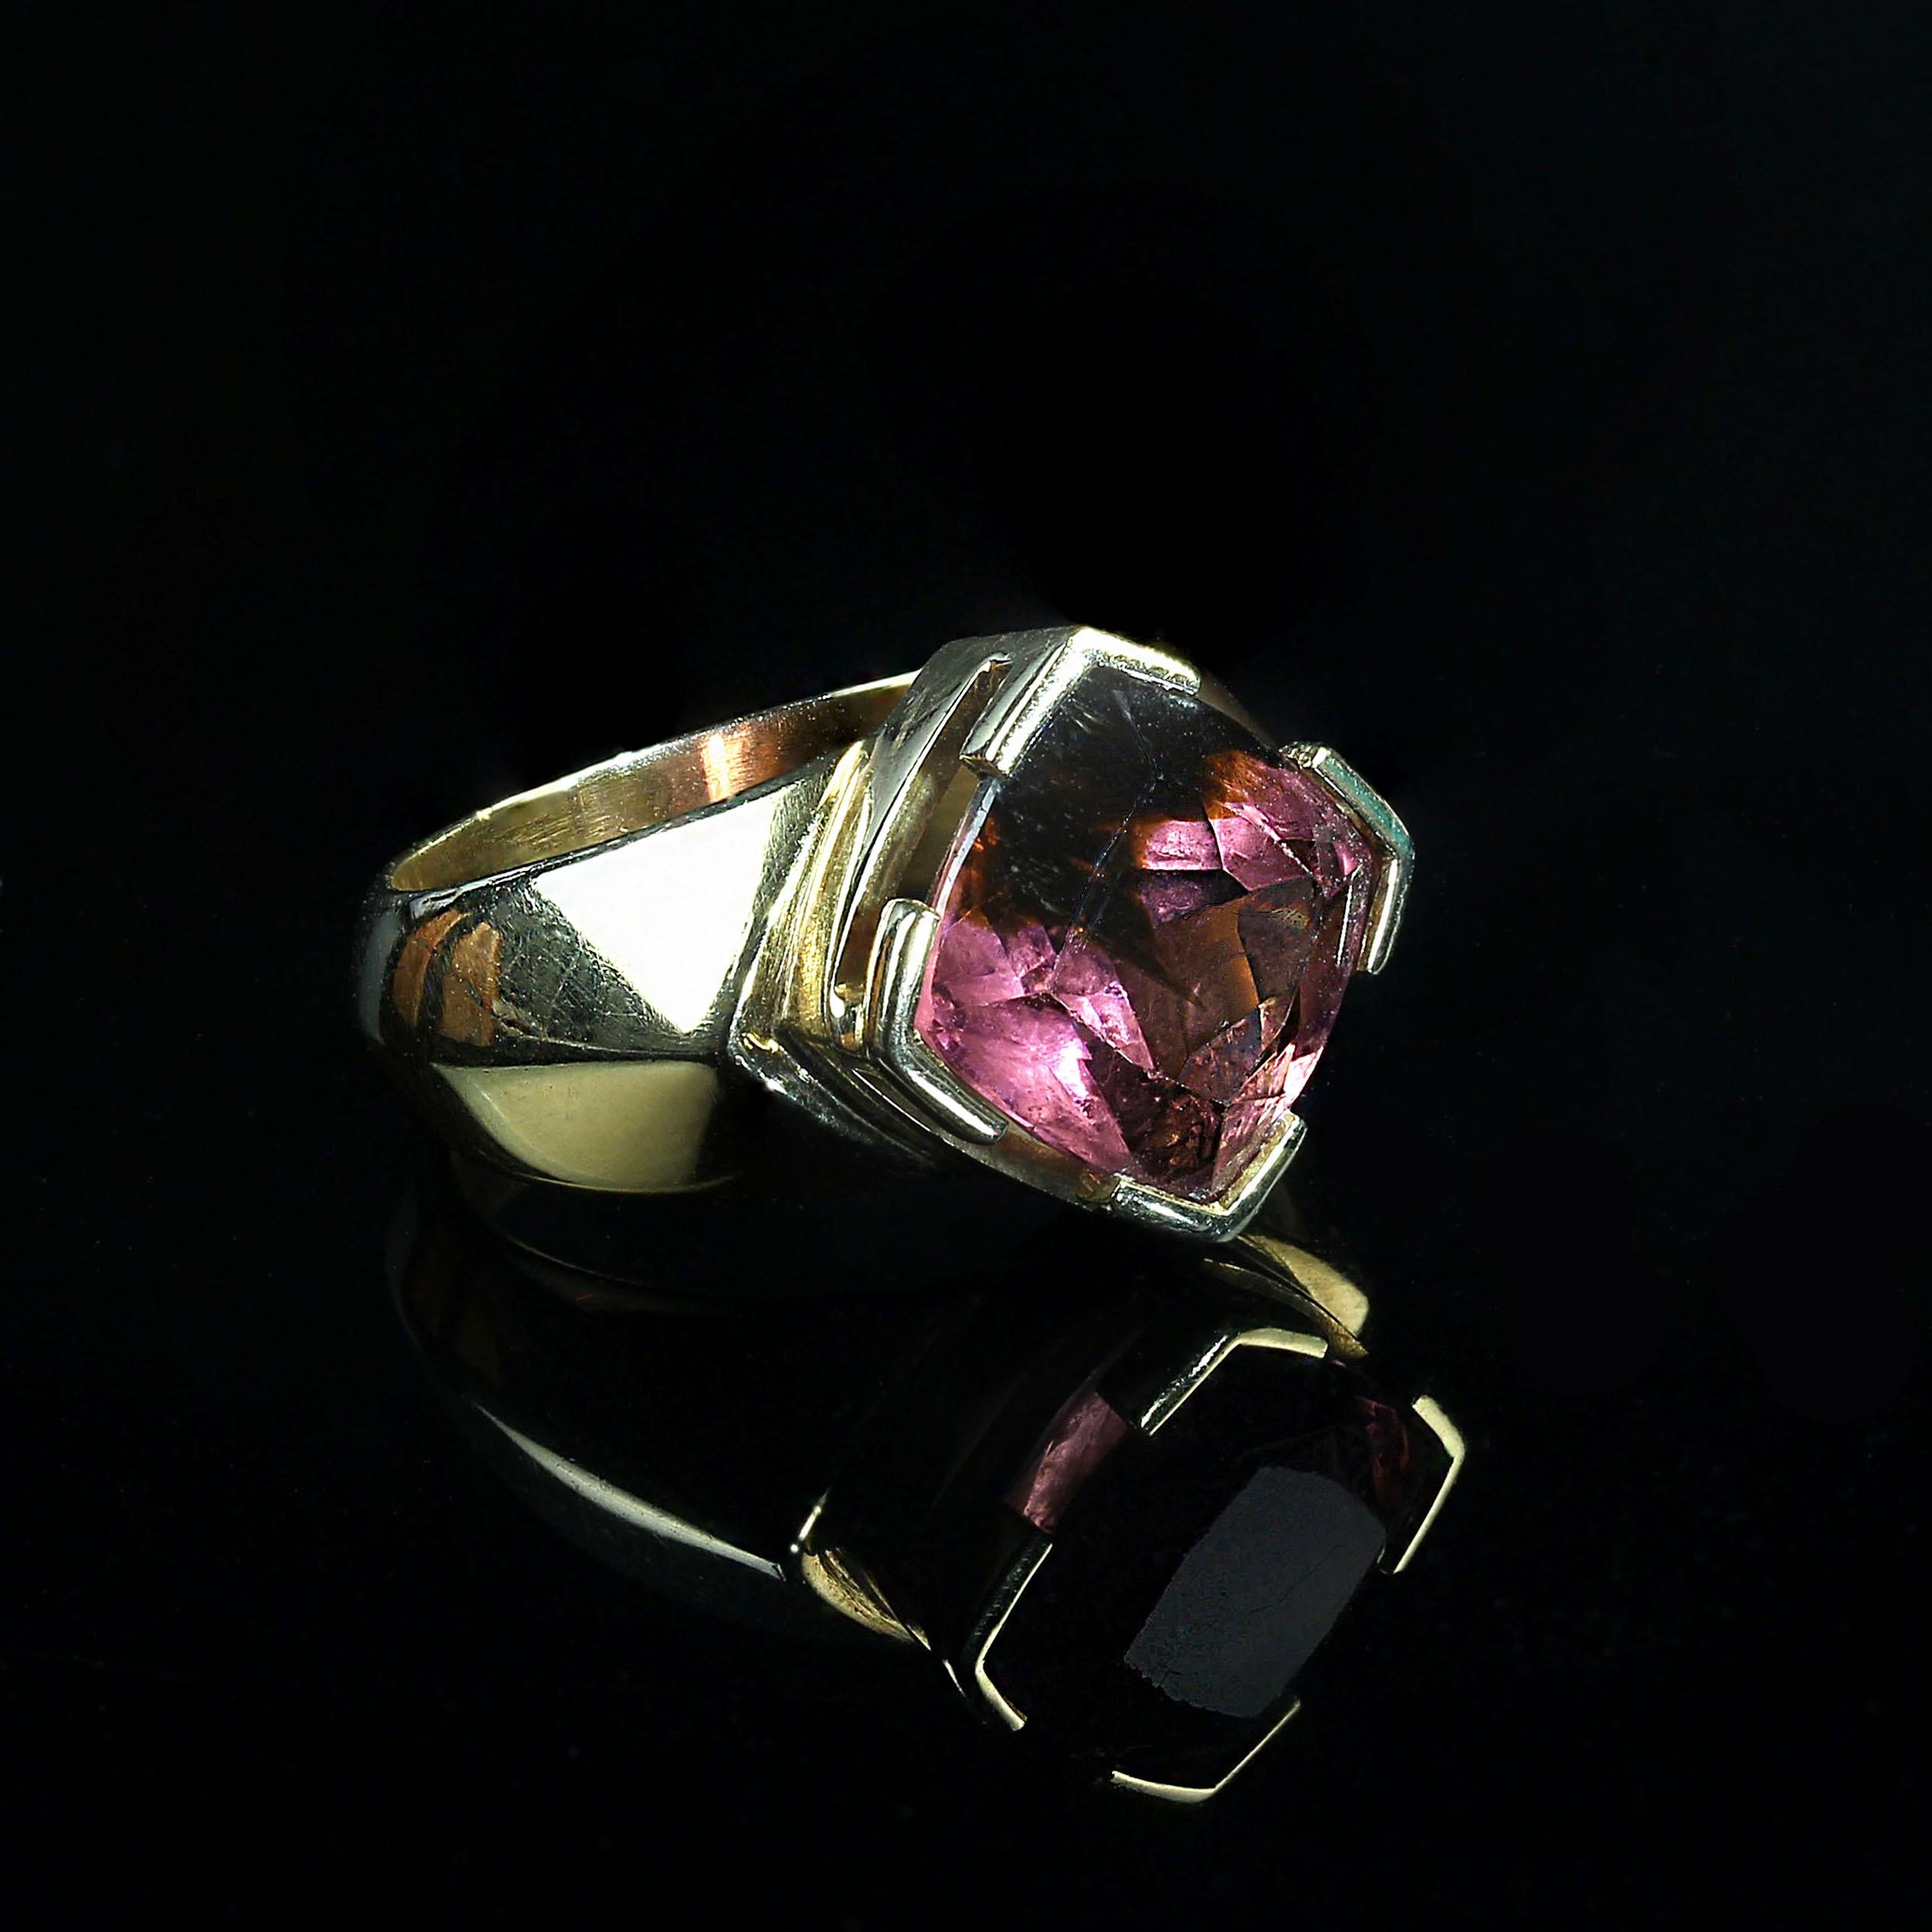 Dies ist das perfekte Geschenk.  Ein wunderschöner brasilianischer rosafarbener und grüner Turmalin im Kissenschliff (10x10mm), eingefasst in einen eigenen handgefertigten Ring aus 18 Karat Gelbgold. Der Ring besteht aus üppigem, reichhaltigem